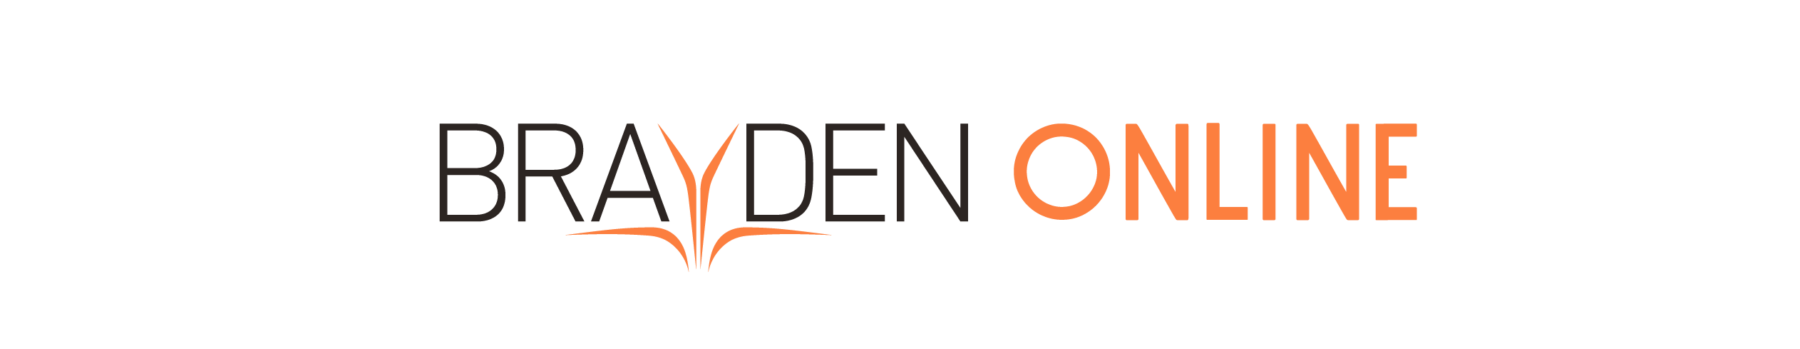 Brayden Online Logo Banner